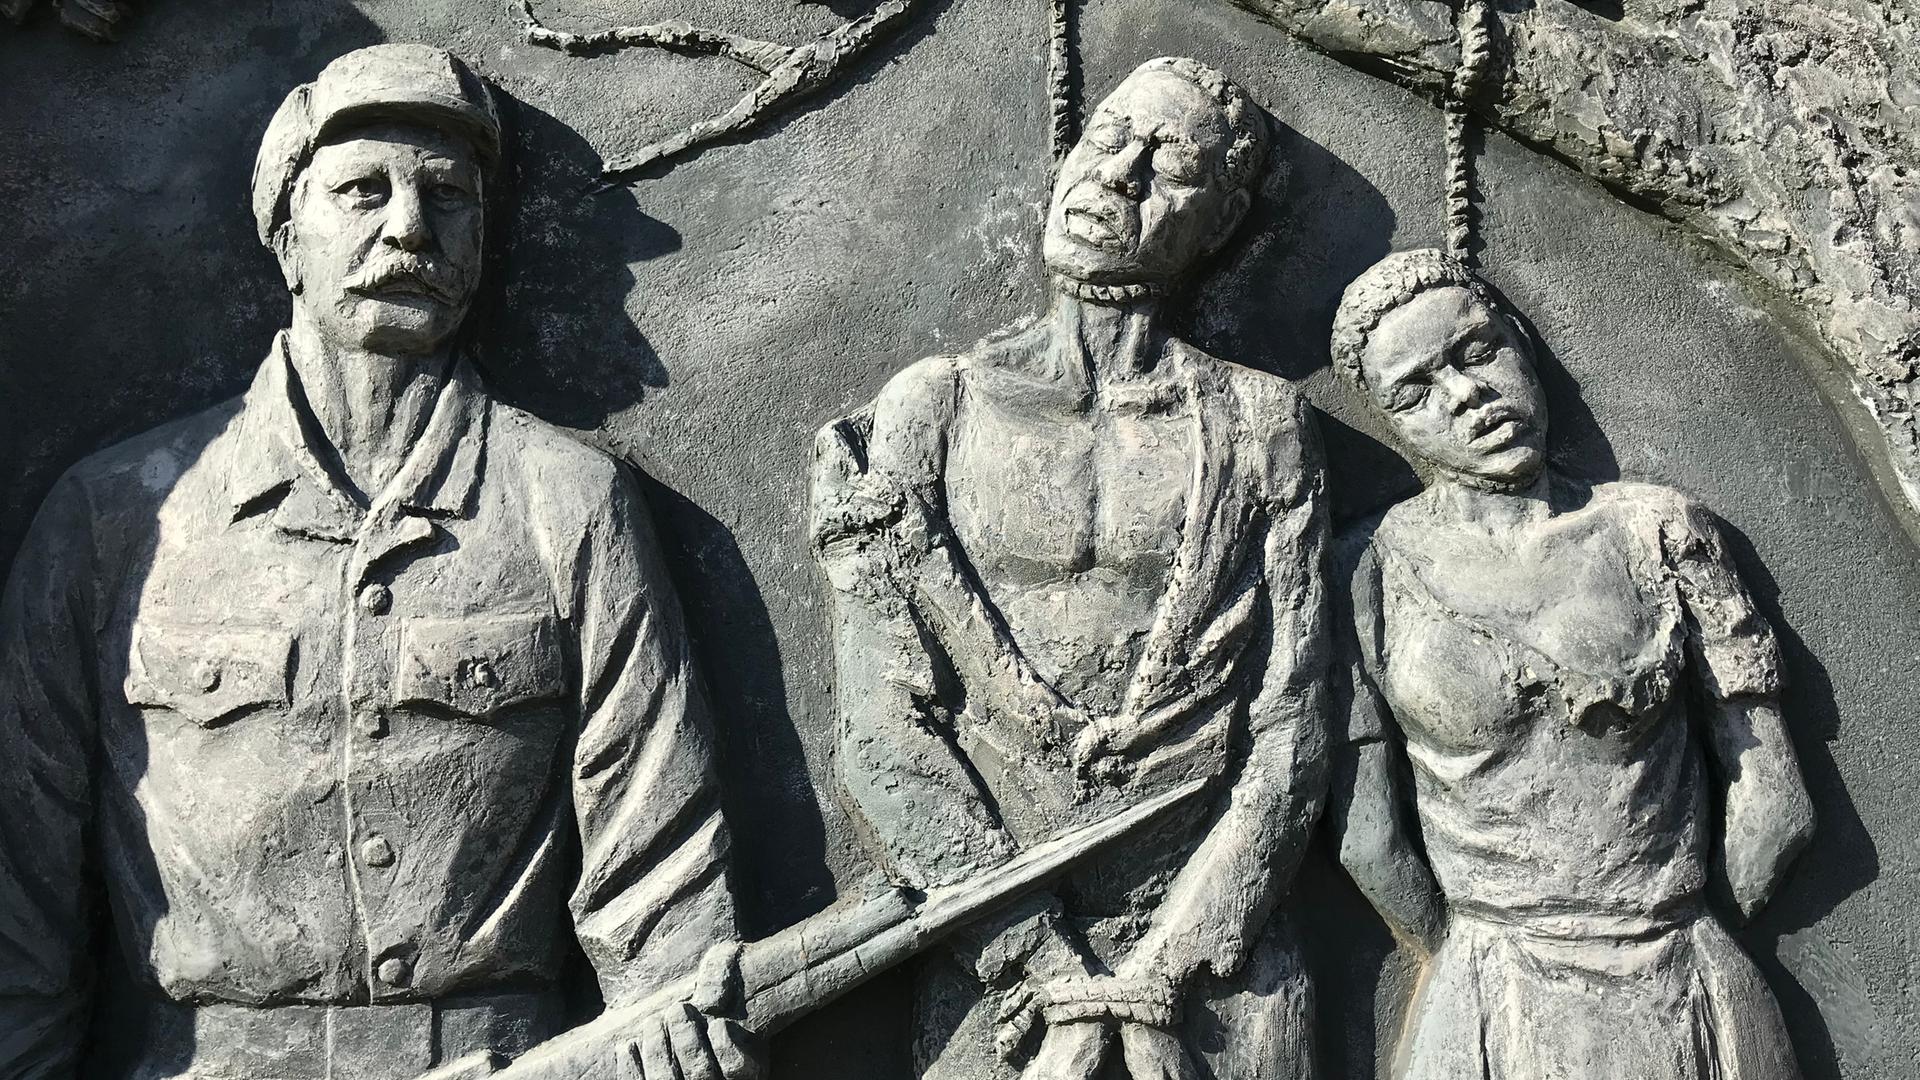 Ein Denkmal zur Erinnerung an den von deutschen Kolonialtruppen begangenen Völkermord an den Herero und Nama zeigt Gehängte neben einem schnauzbärtigen Soldaten.